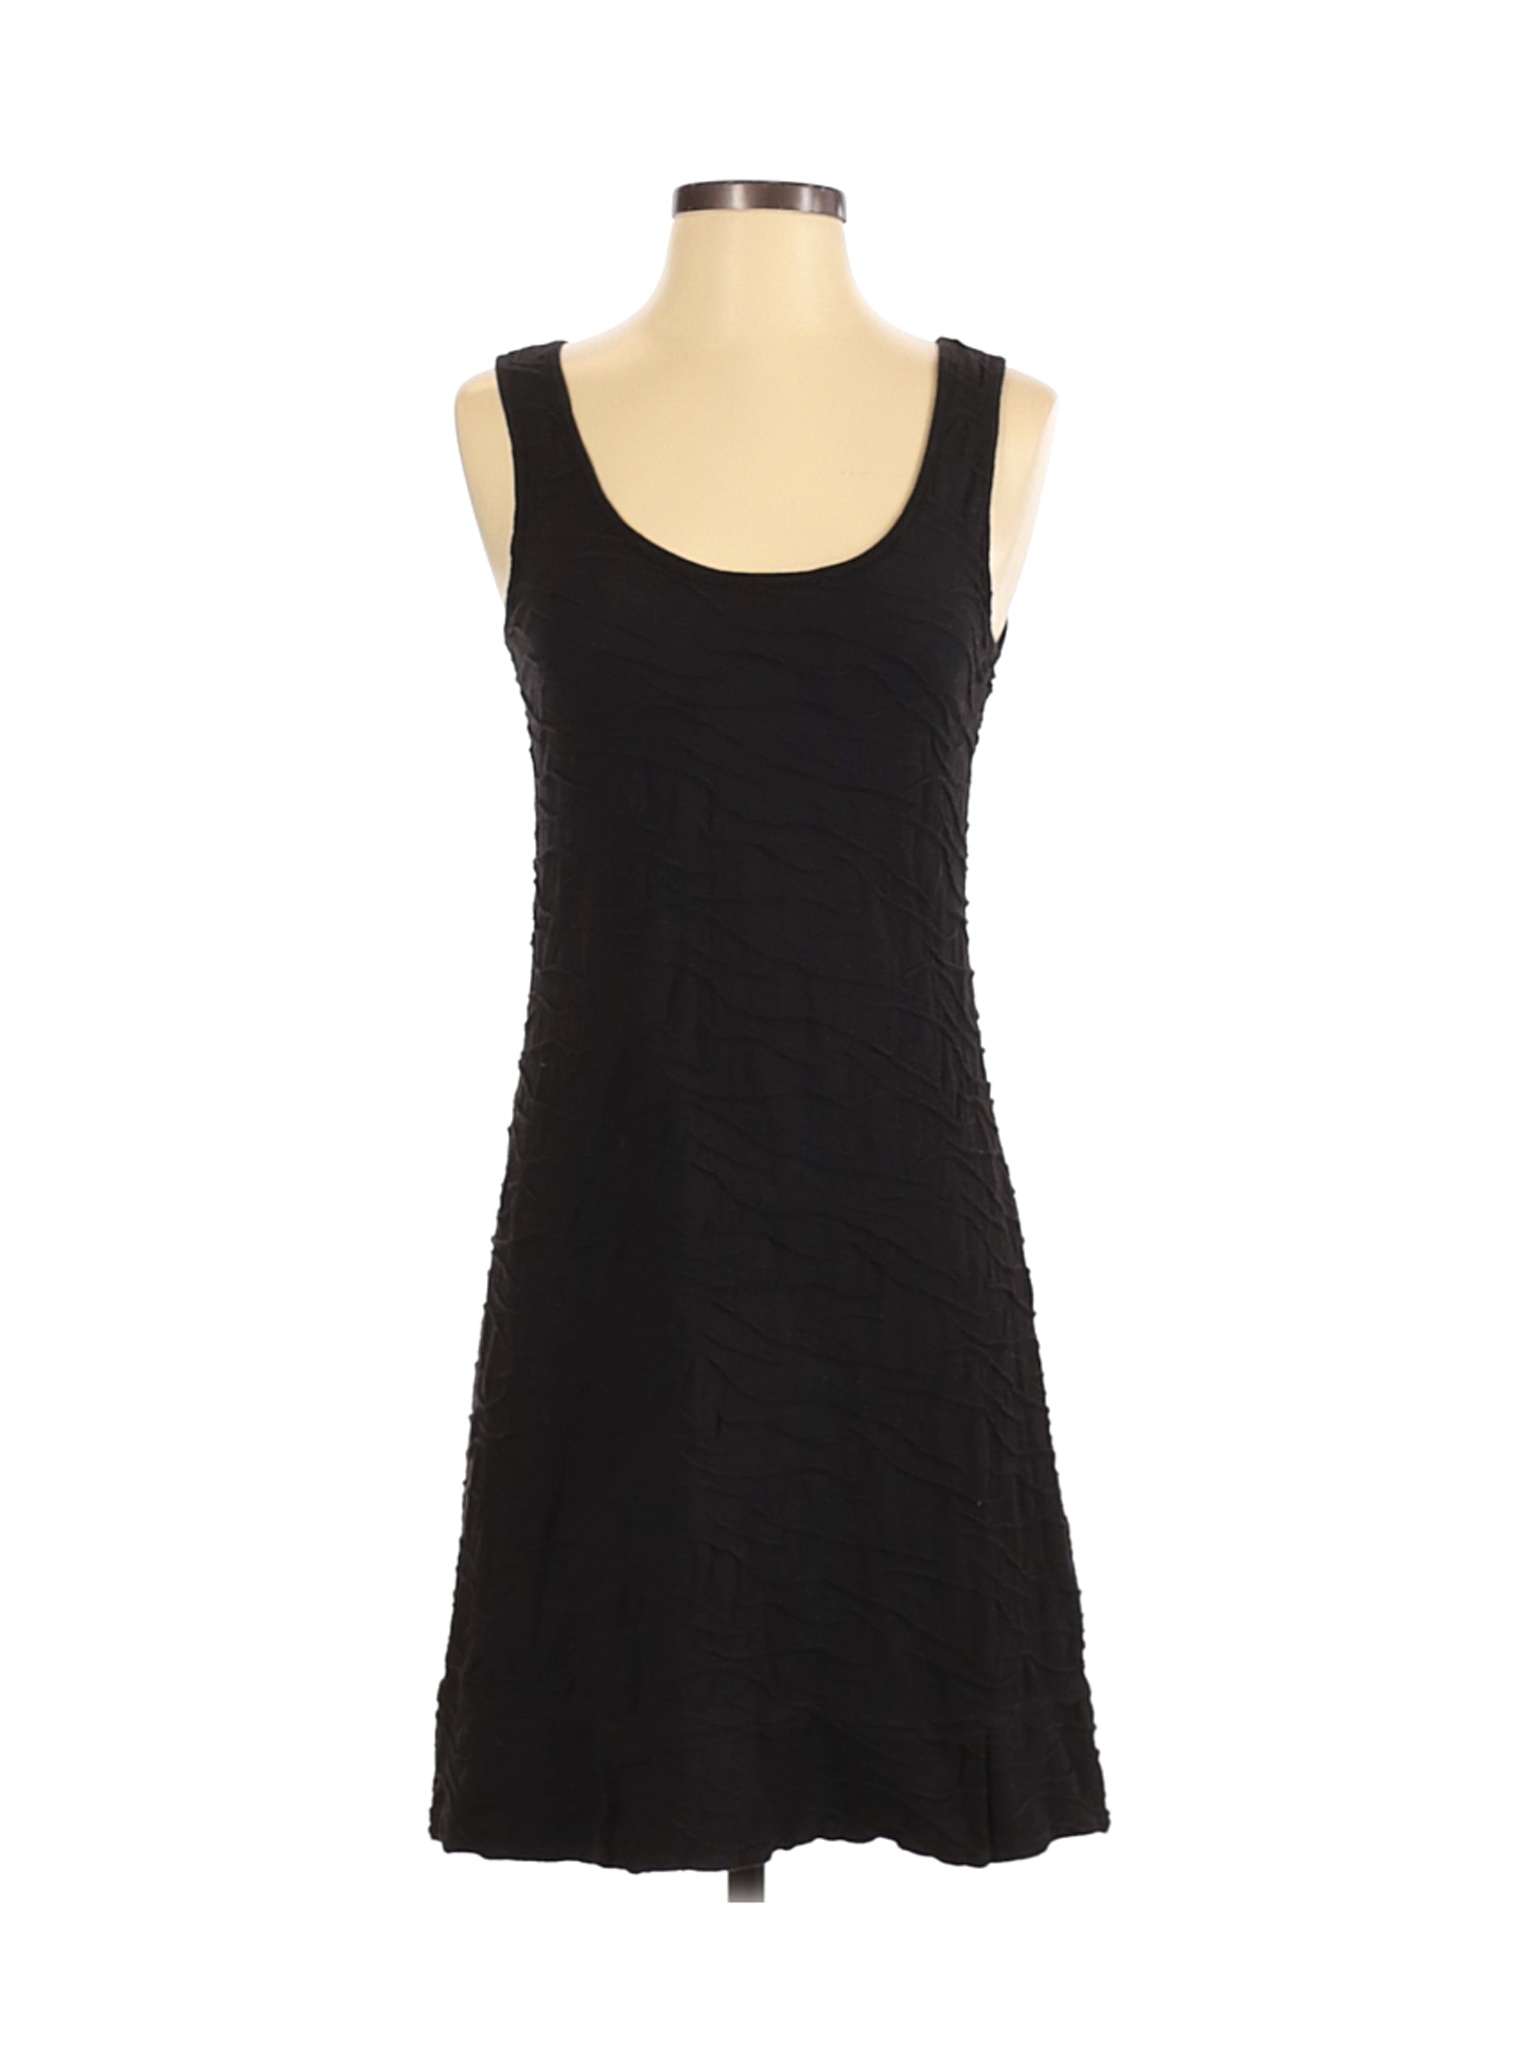 Toad & Co Women Black Casual Dress S | eBay